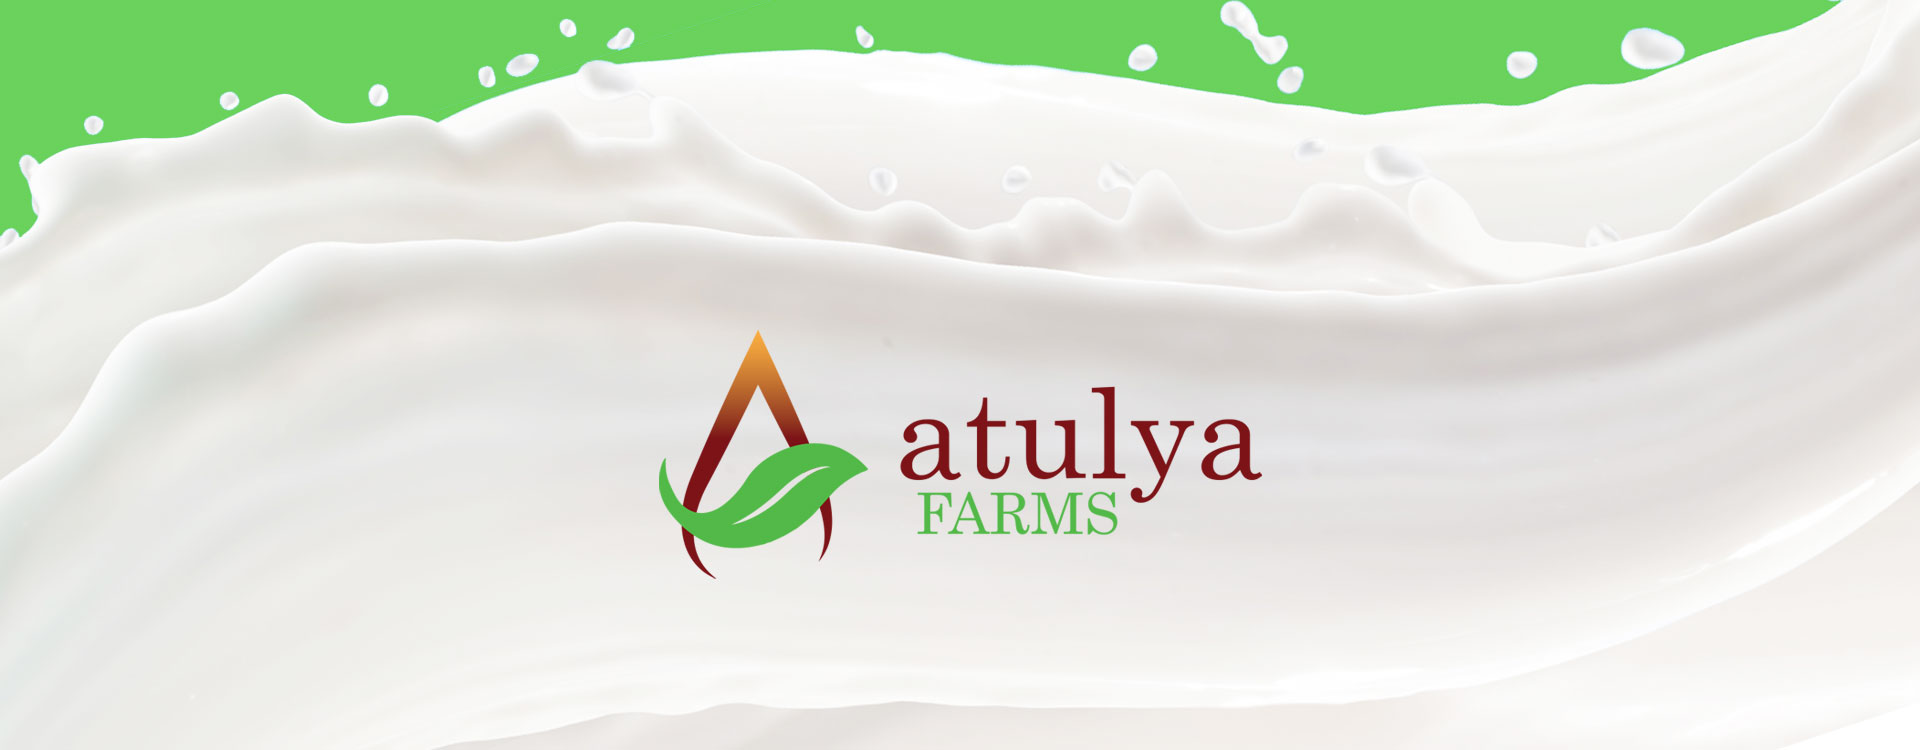 Logo design for Atulya Farms - A2 cow milk brand